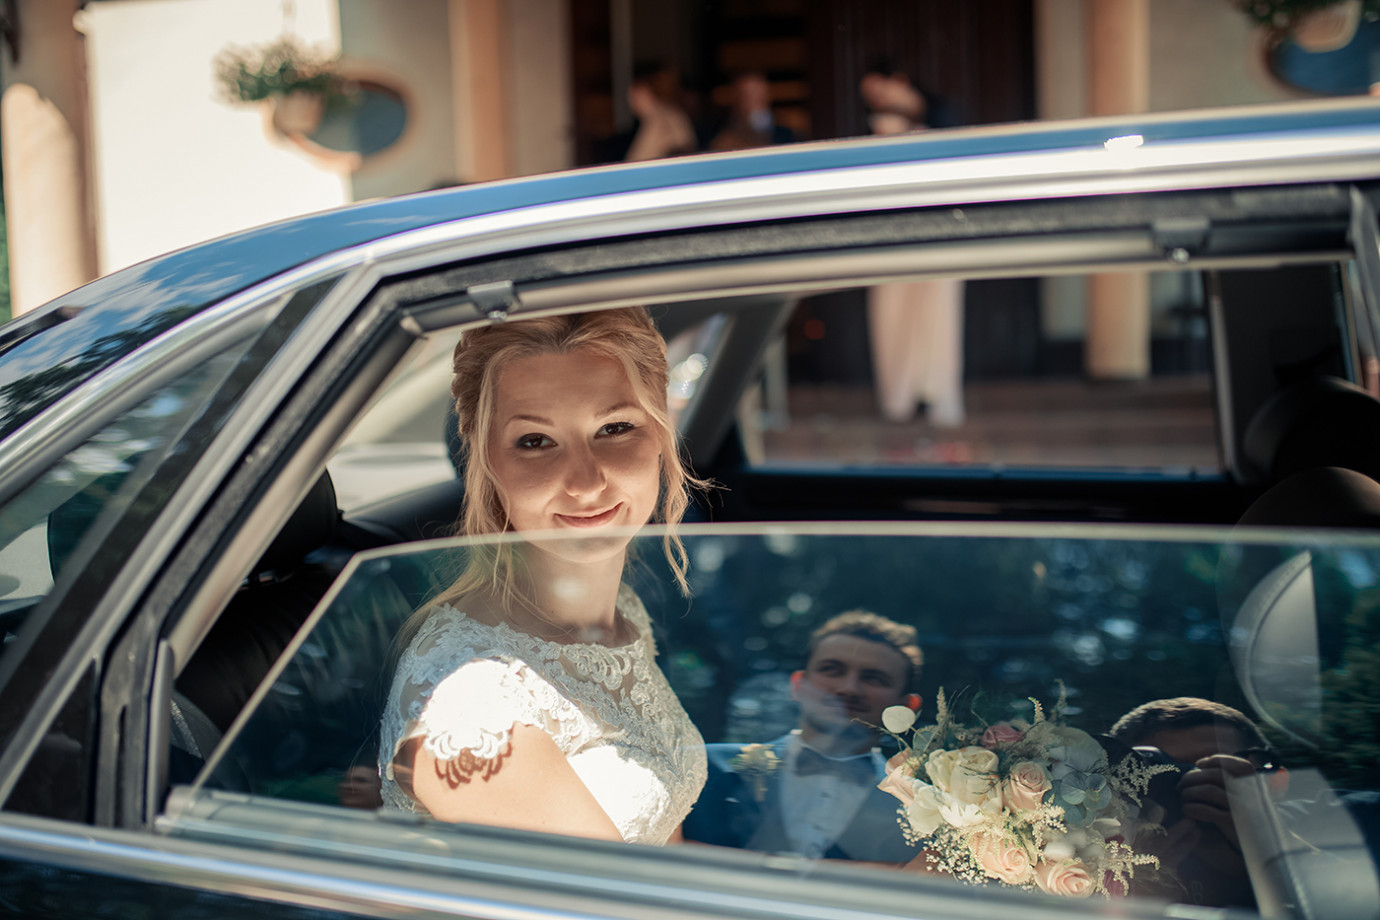 fotograf krakow janusz-zolnierczyk portfolio zdjecia slubne inspiracje wesele plener slubny sesja slubna